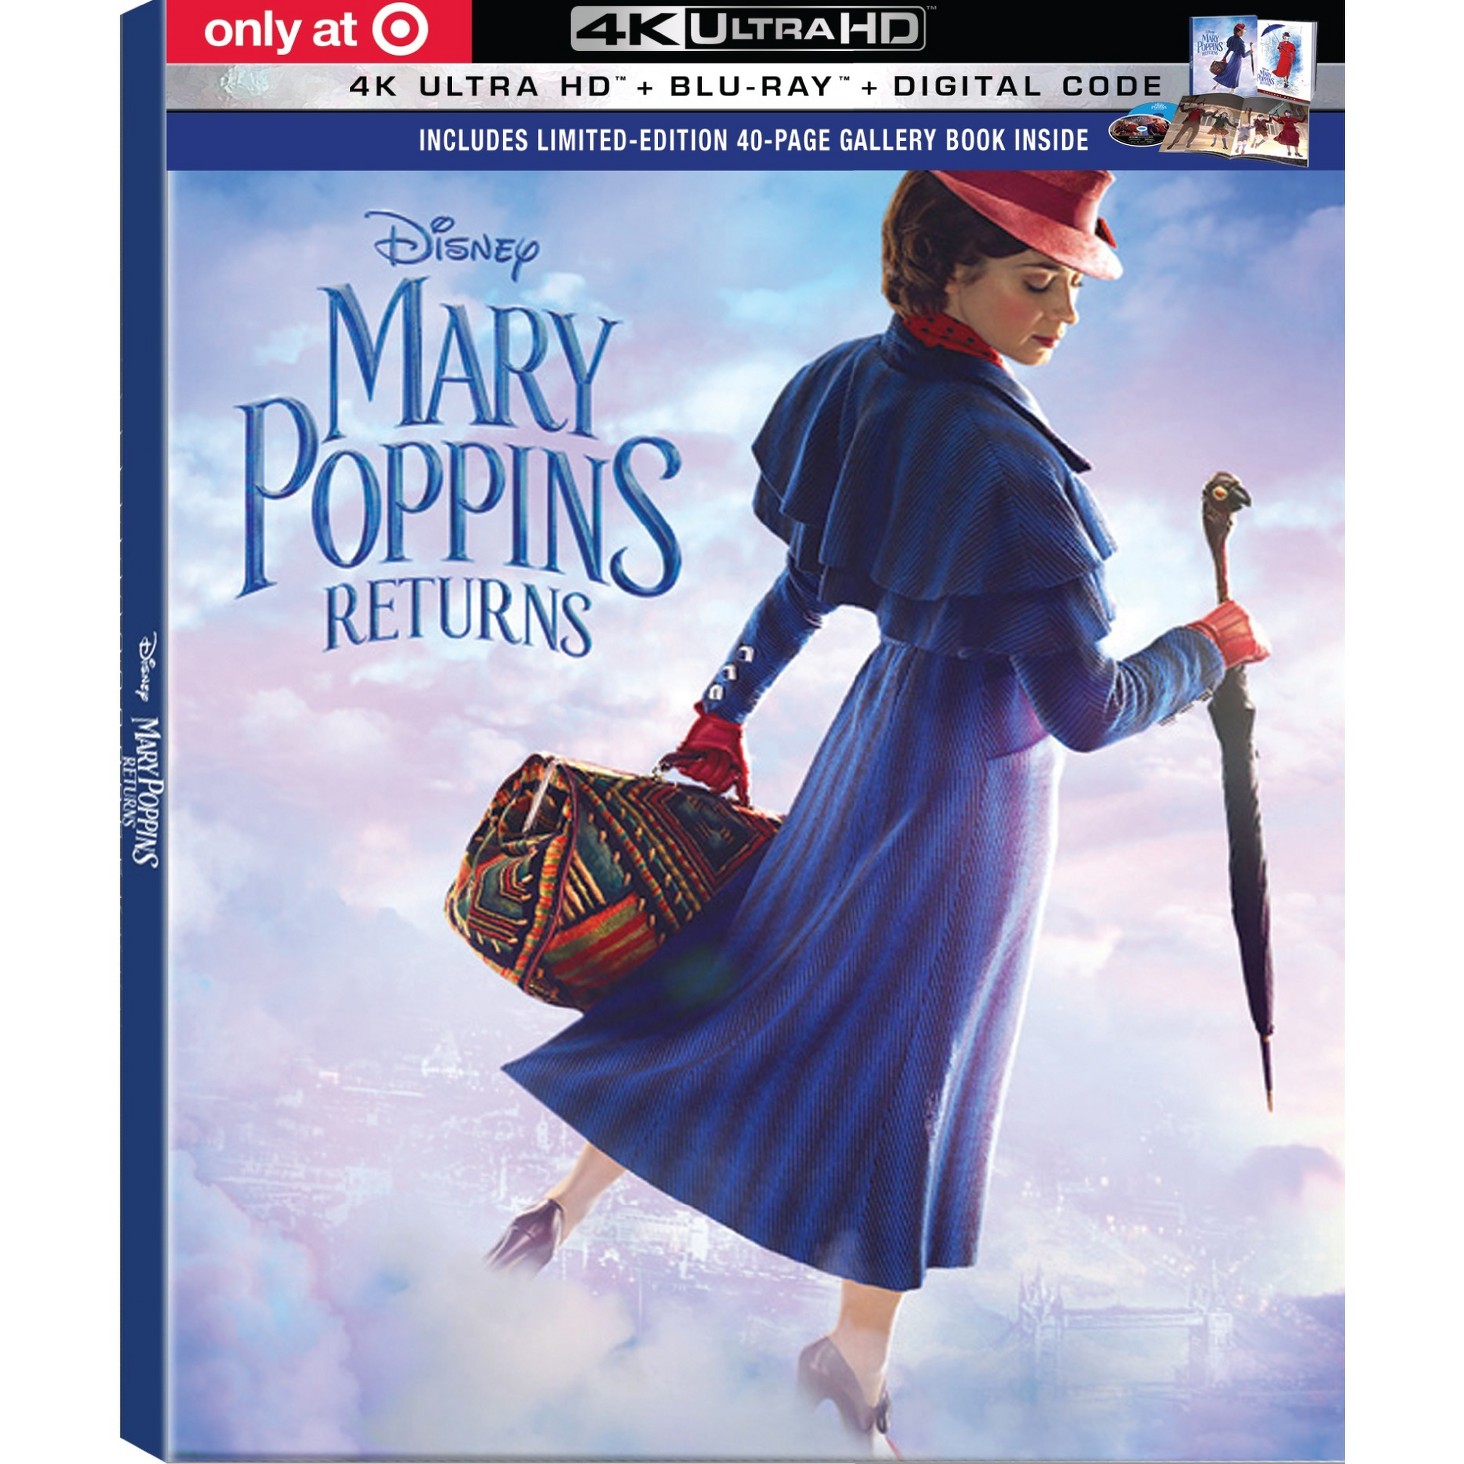 Le Retour de Mary Poppins [Disney - 2018] - Page 16 GUEST_503c13d0-0aae-47d4-a7ea-91a73ad9868e?wid=1464&hei=1464&fmt=pjpeg